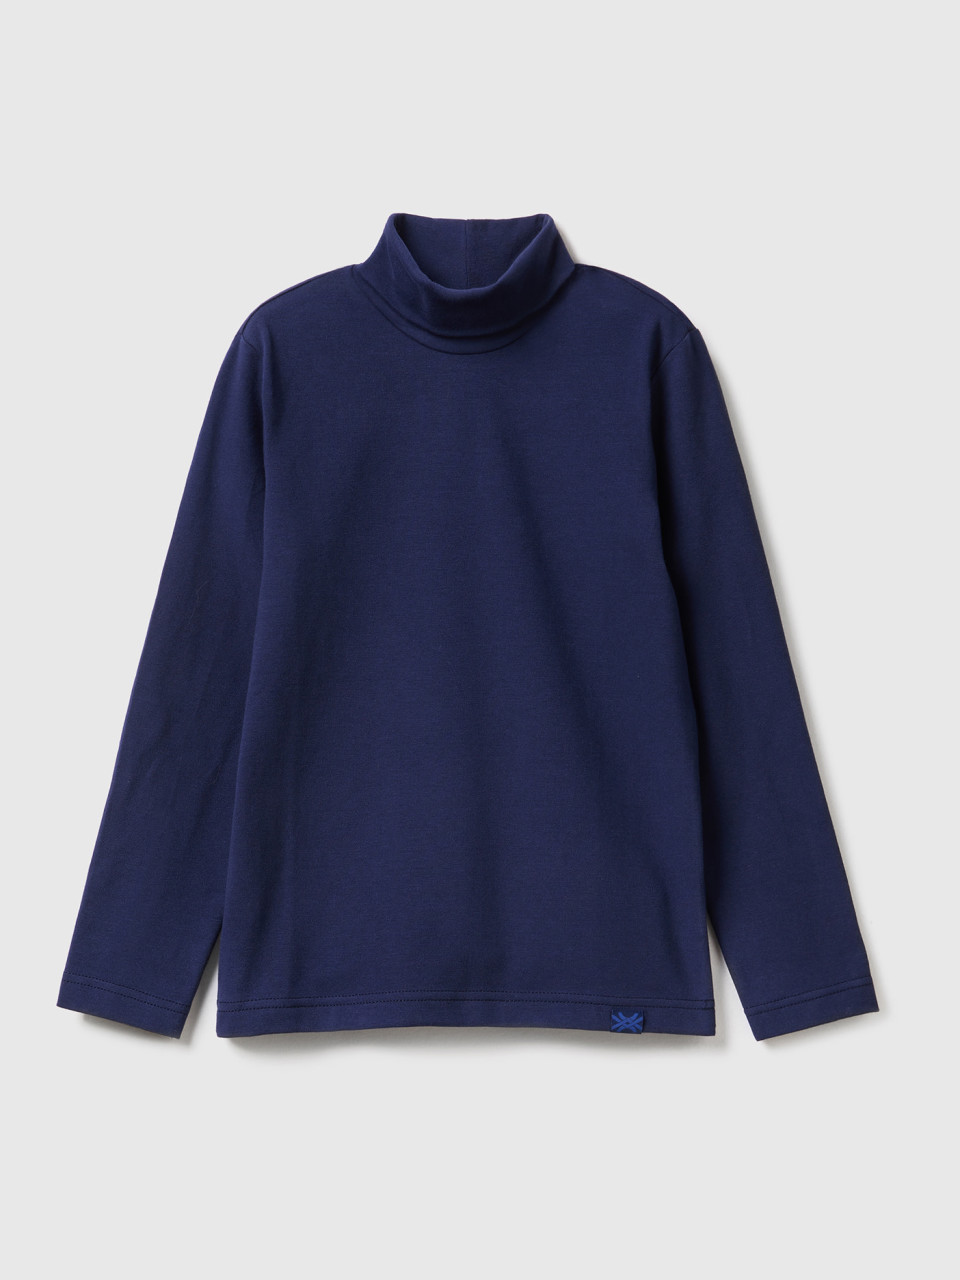 Benetton, Camiseta De Cuello Alto Y Manga Larga, Azul Oscuro, Niños